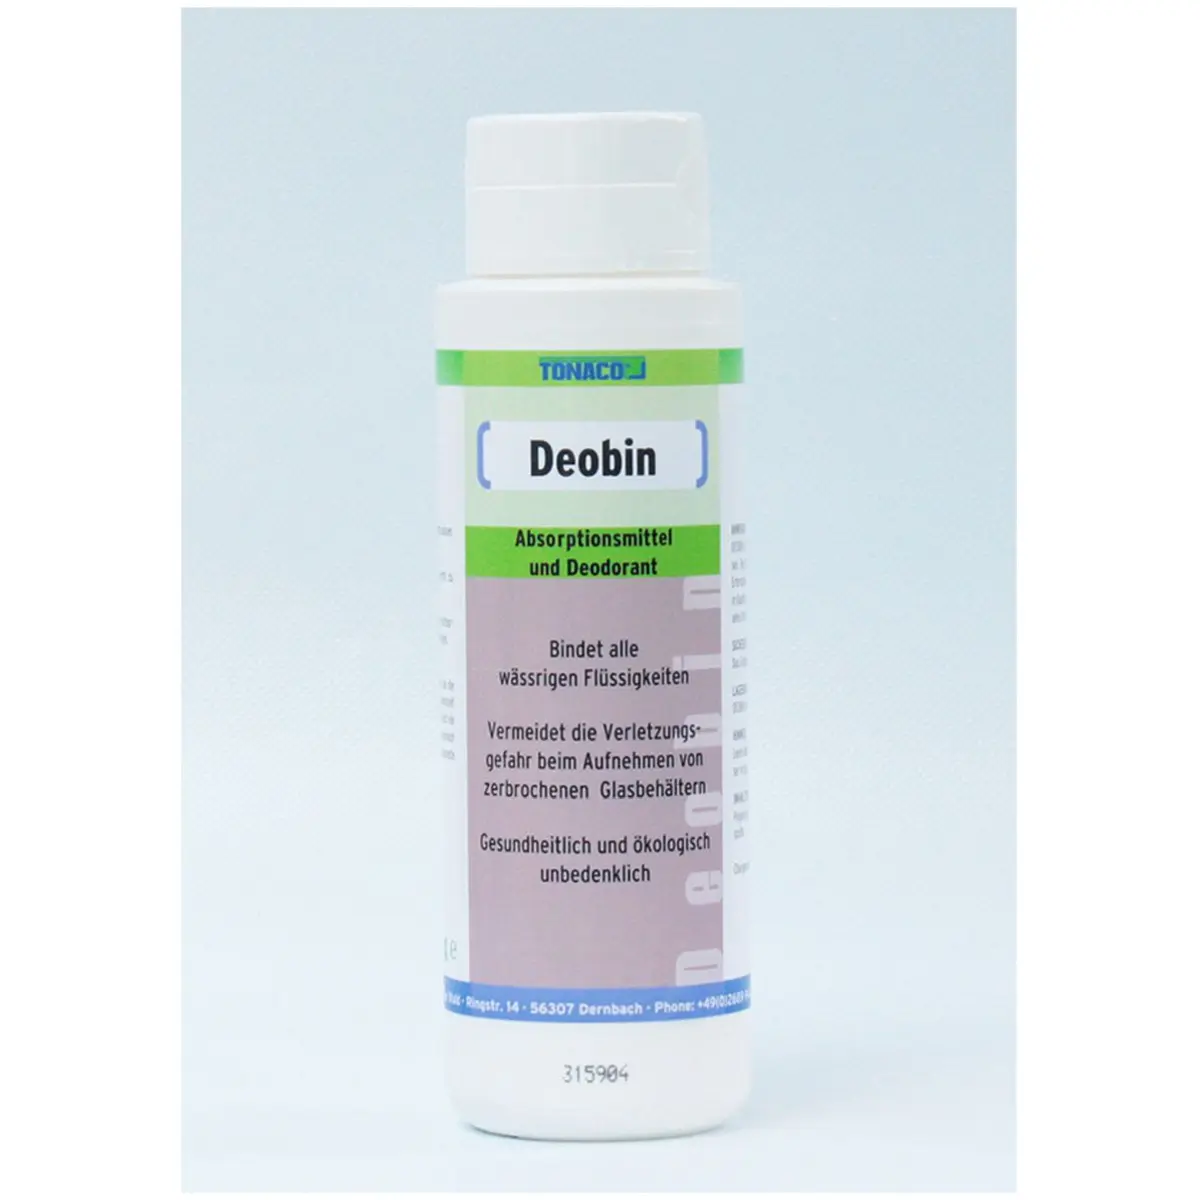 Reinigung, Aufbereitung DEOBIN Superabsorber für Flüssigkeiten, 0,4 kg- Streudosen 12 Stck Bild 1 von 4 für Betriebsmittel